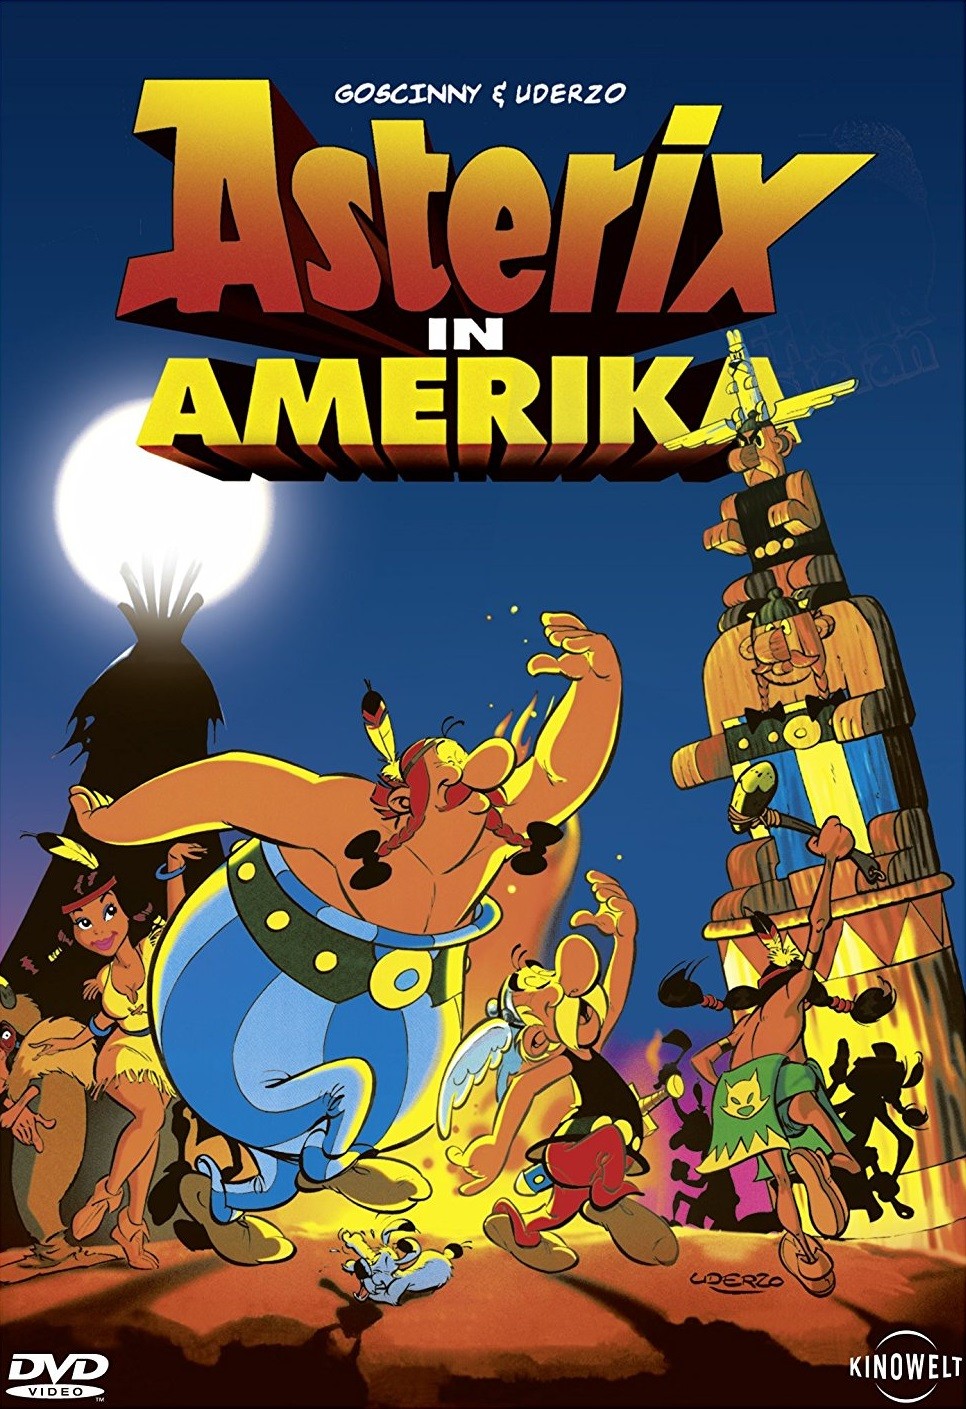 Астерикс завоевывает Америку / Asterix in America (1994) отзывы. Рецензии. Новости кино. Актеры фильма Астерикс завоевывает Америку. Отзывы о фильме Астерикс завоевывает Америку